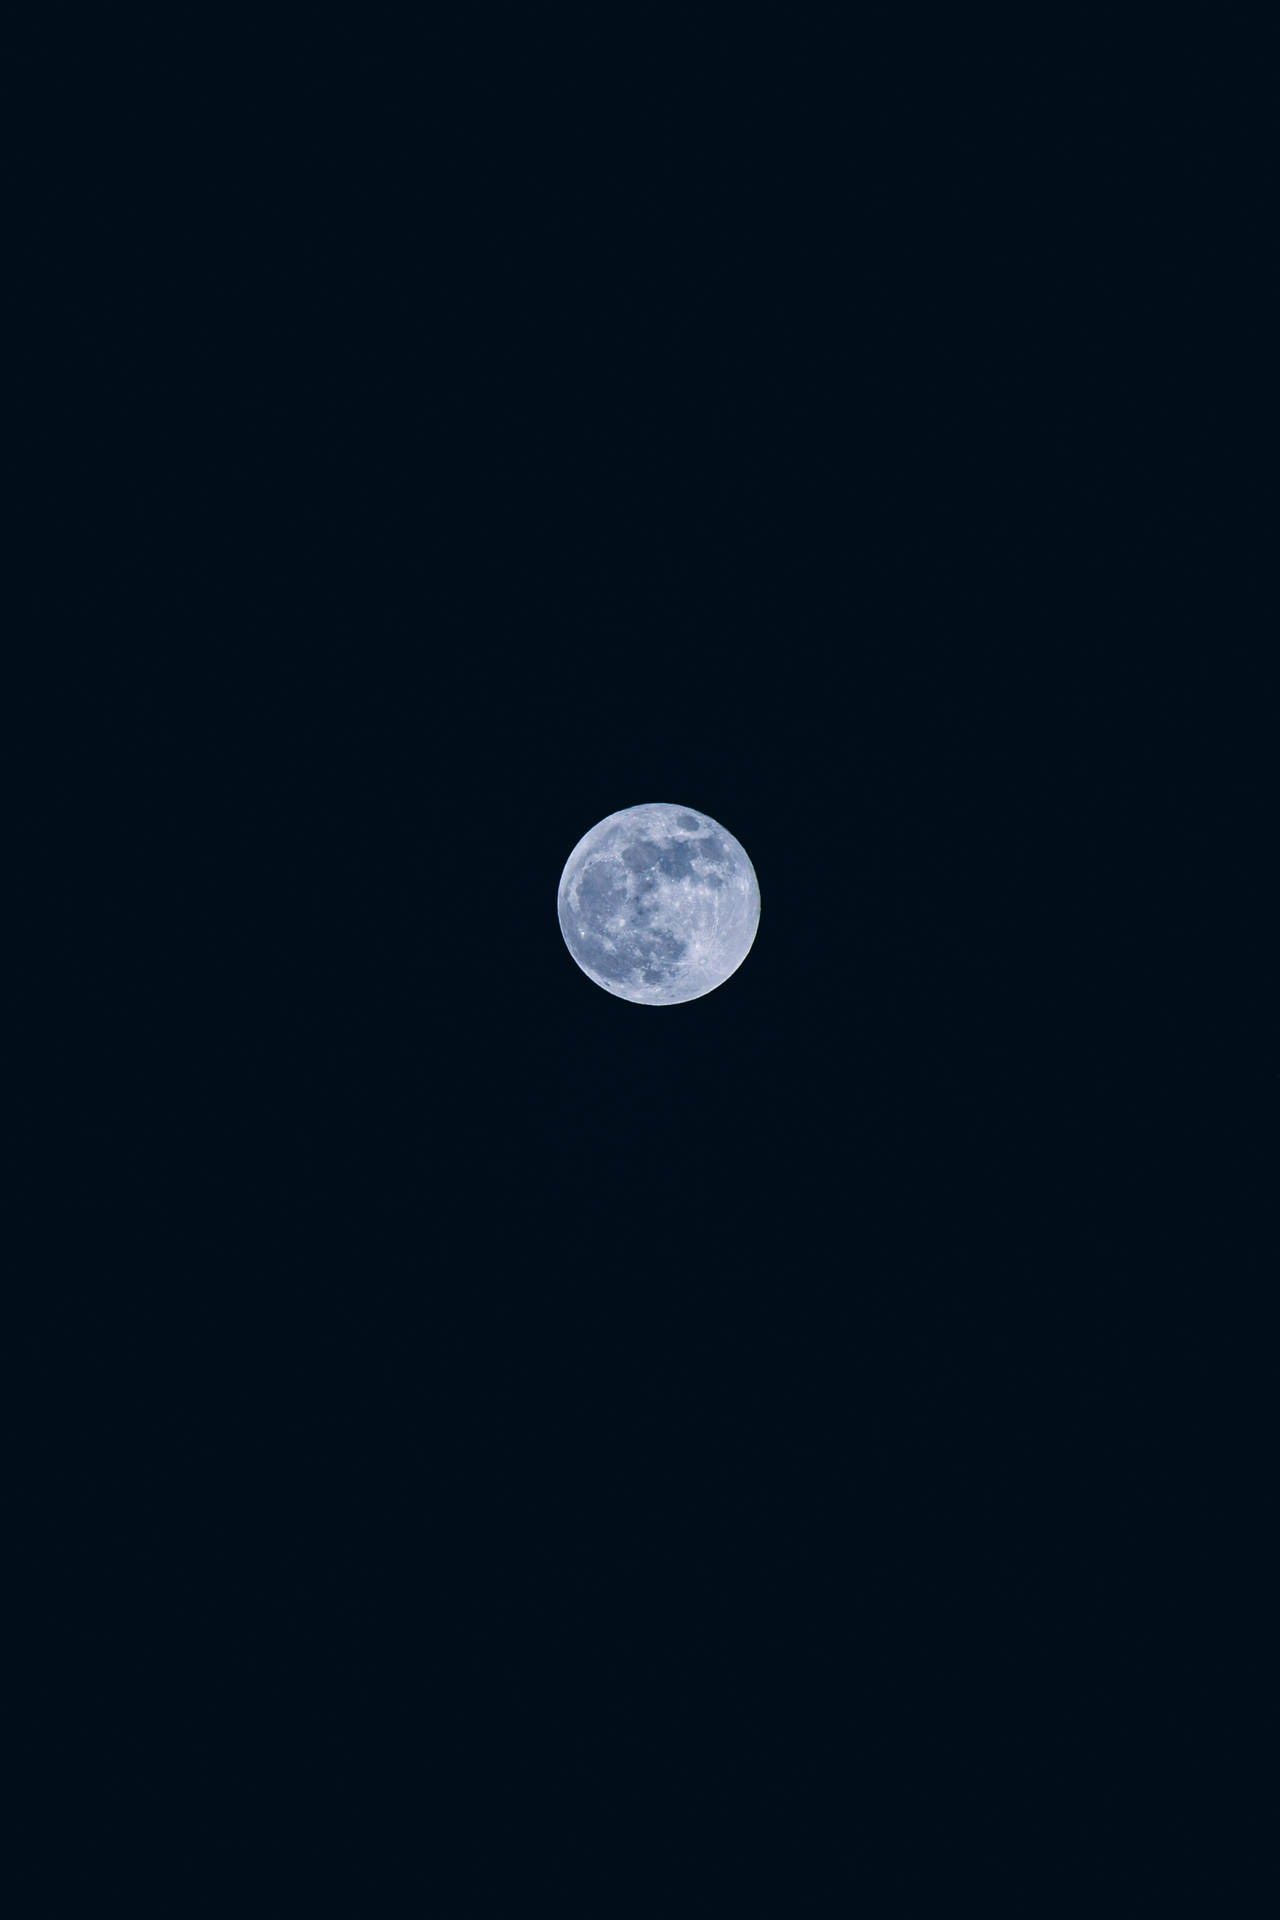 Hd Moon In The Night Sky